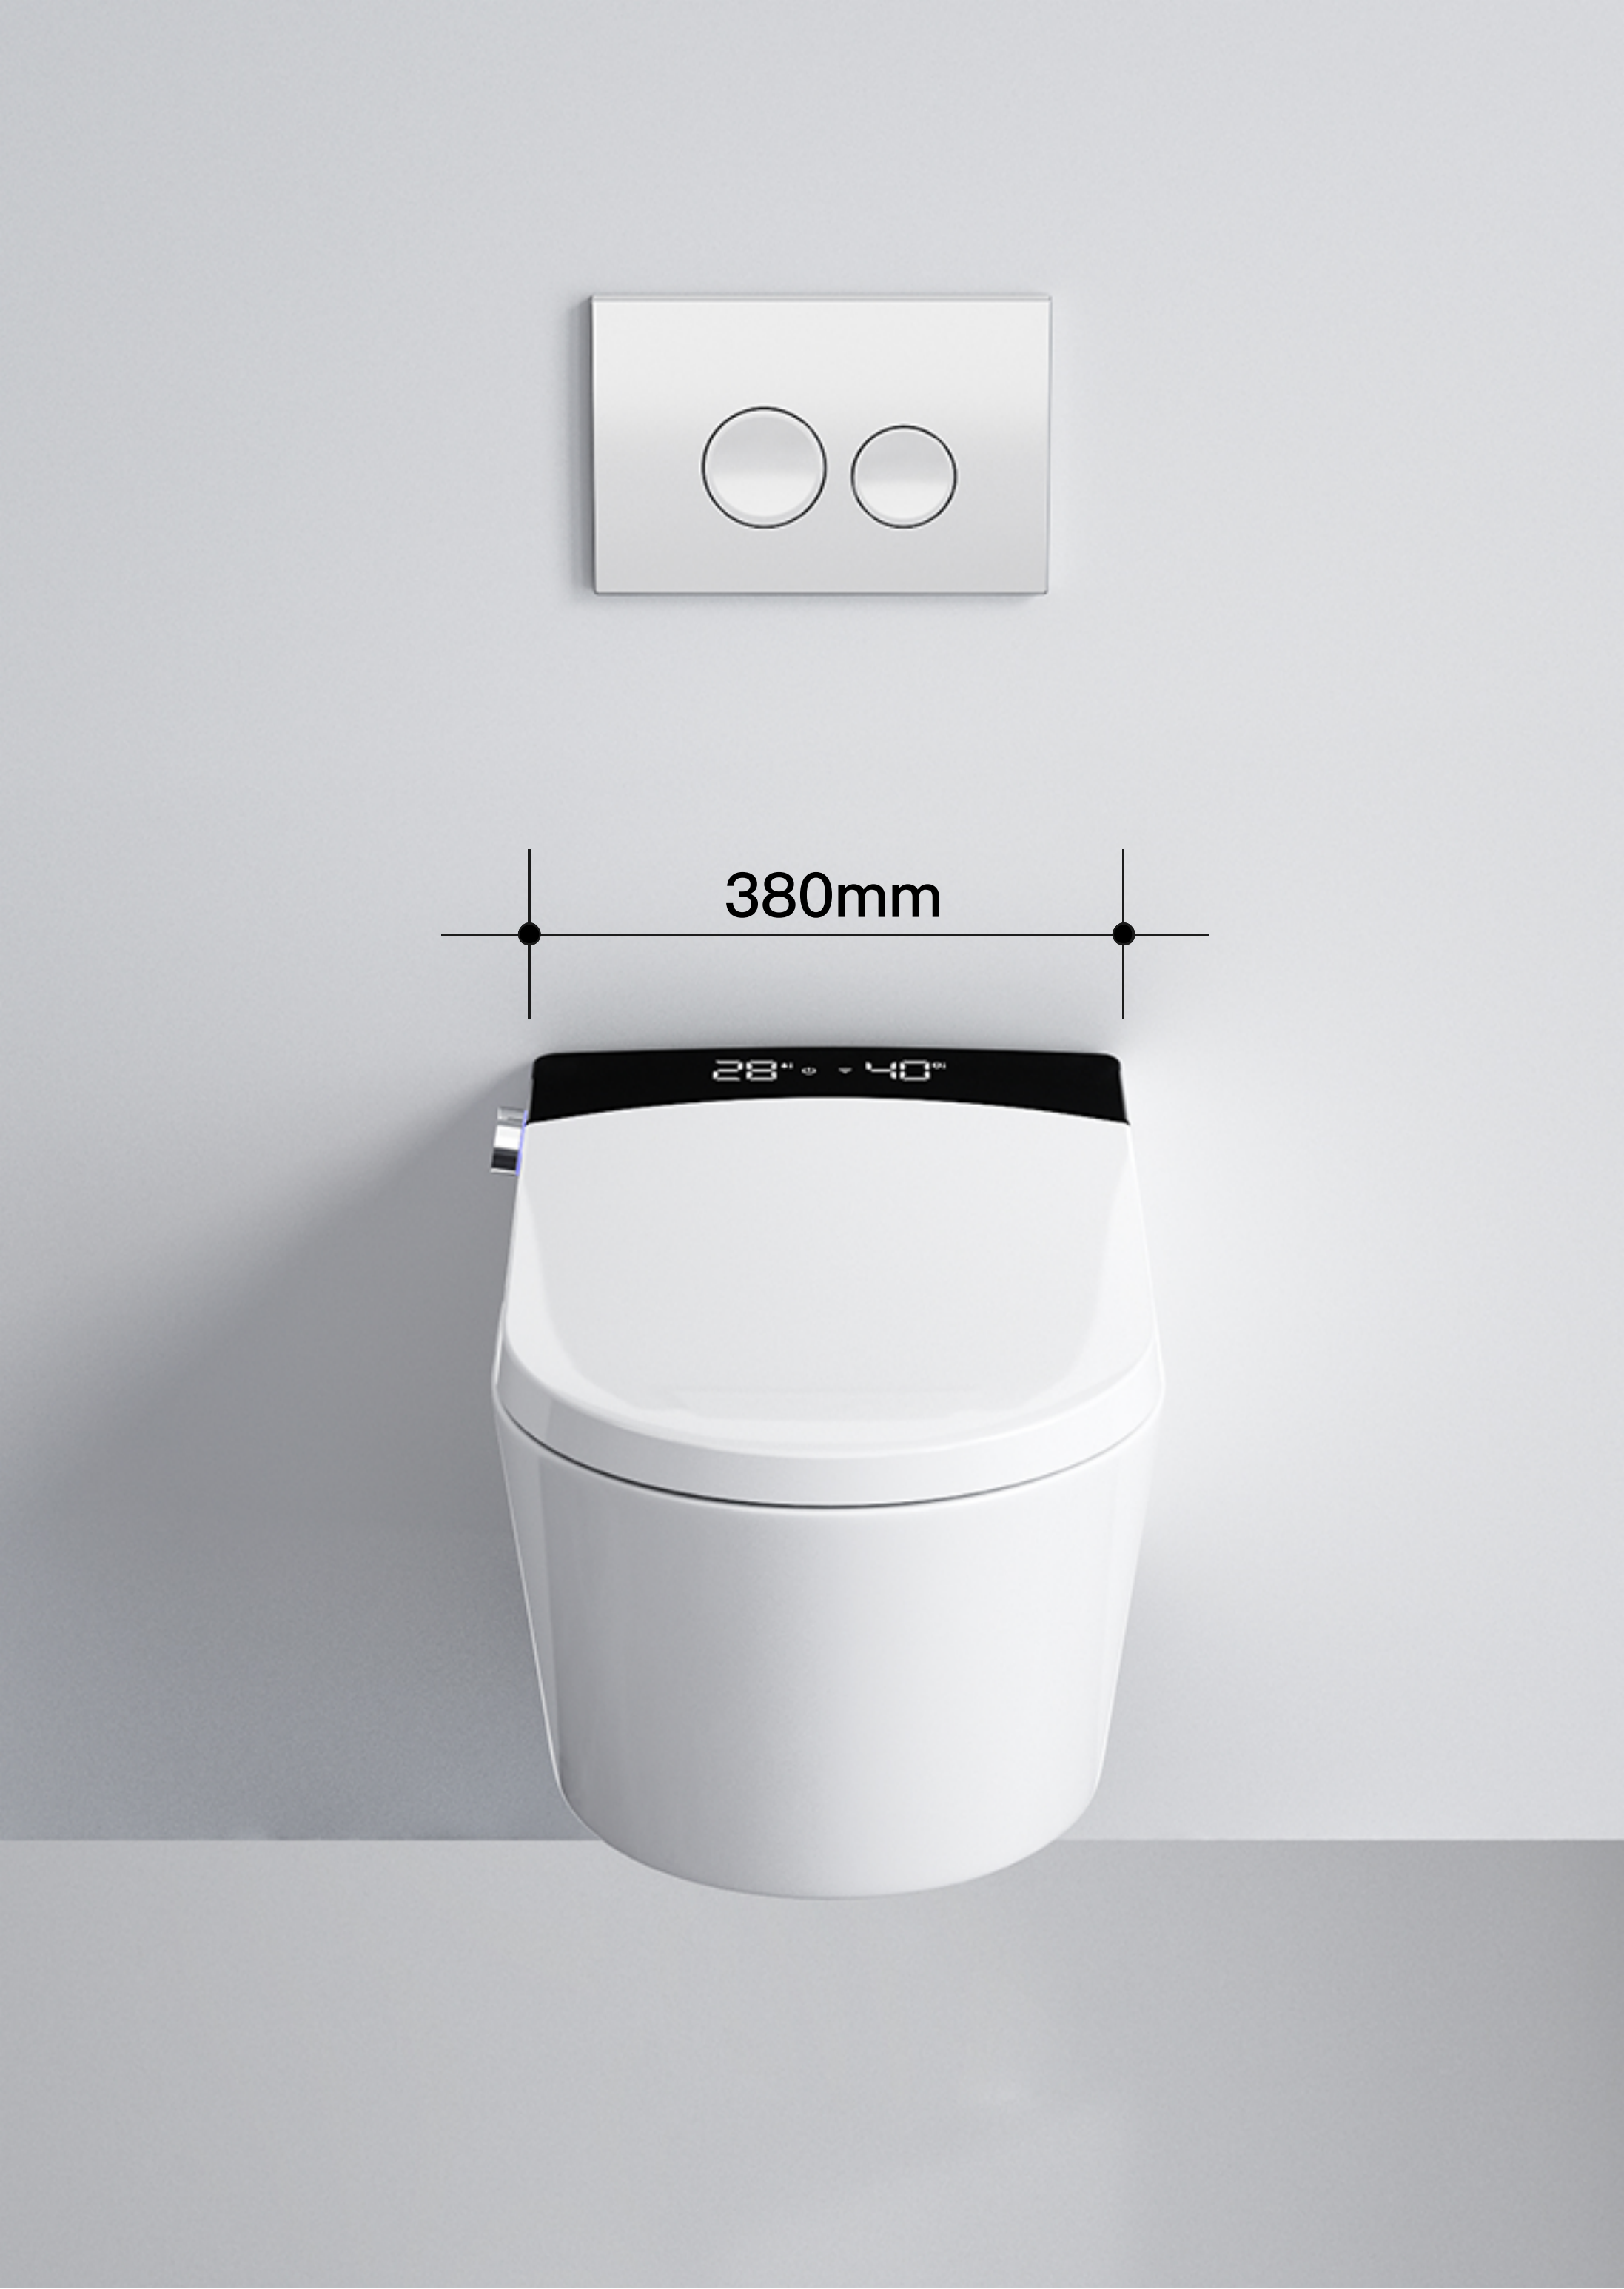 스마트 화장실은 얼마인가요?